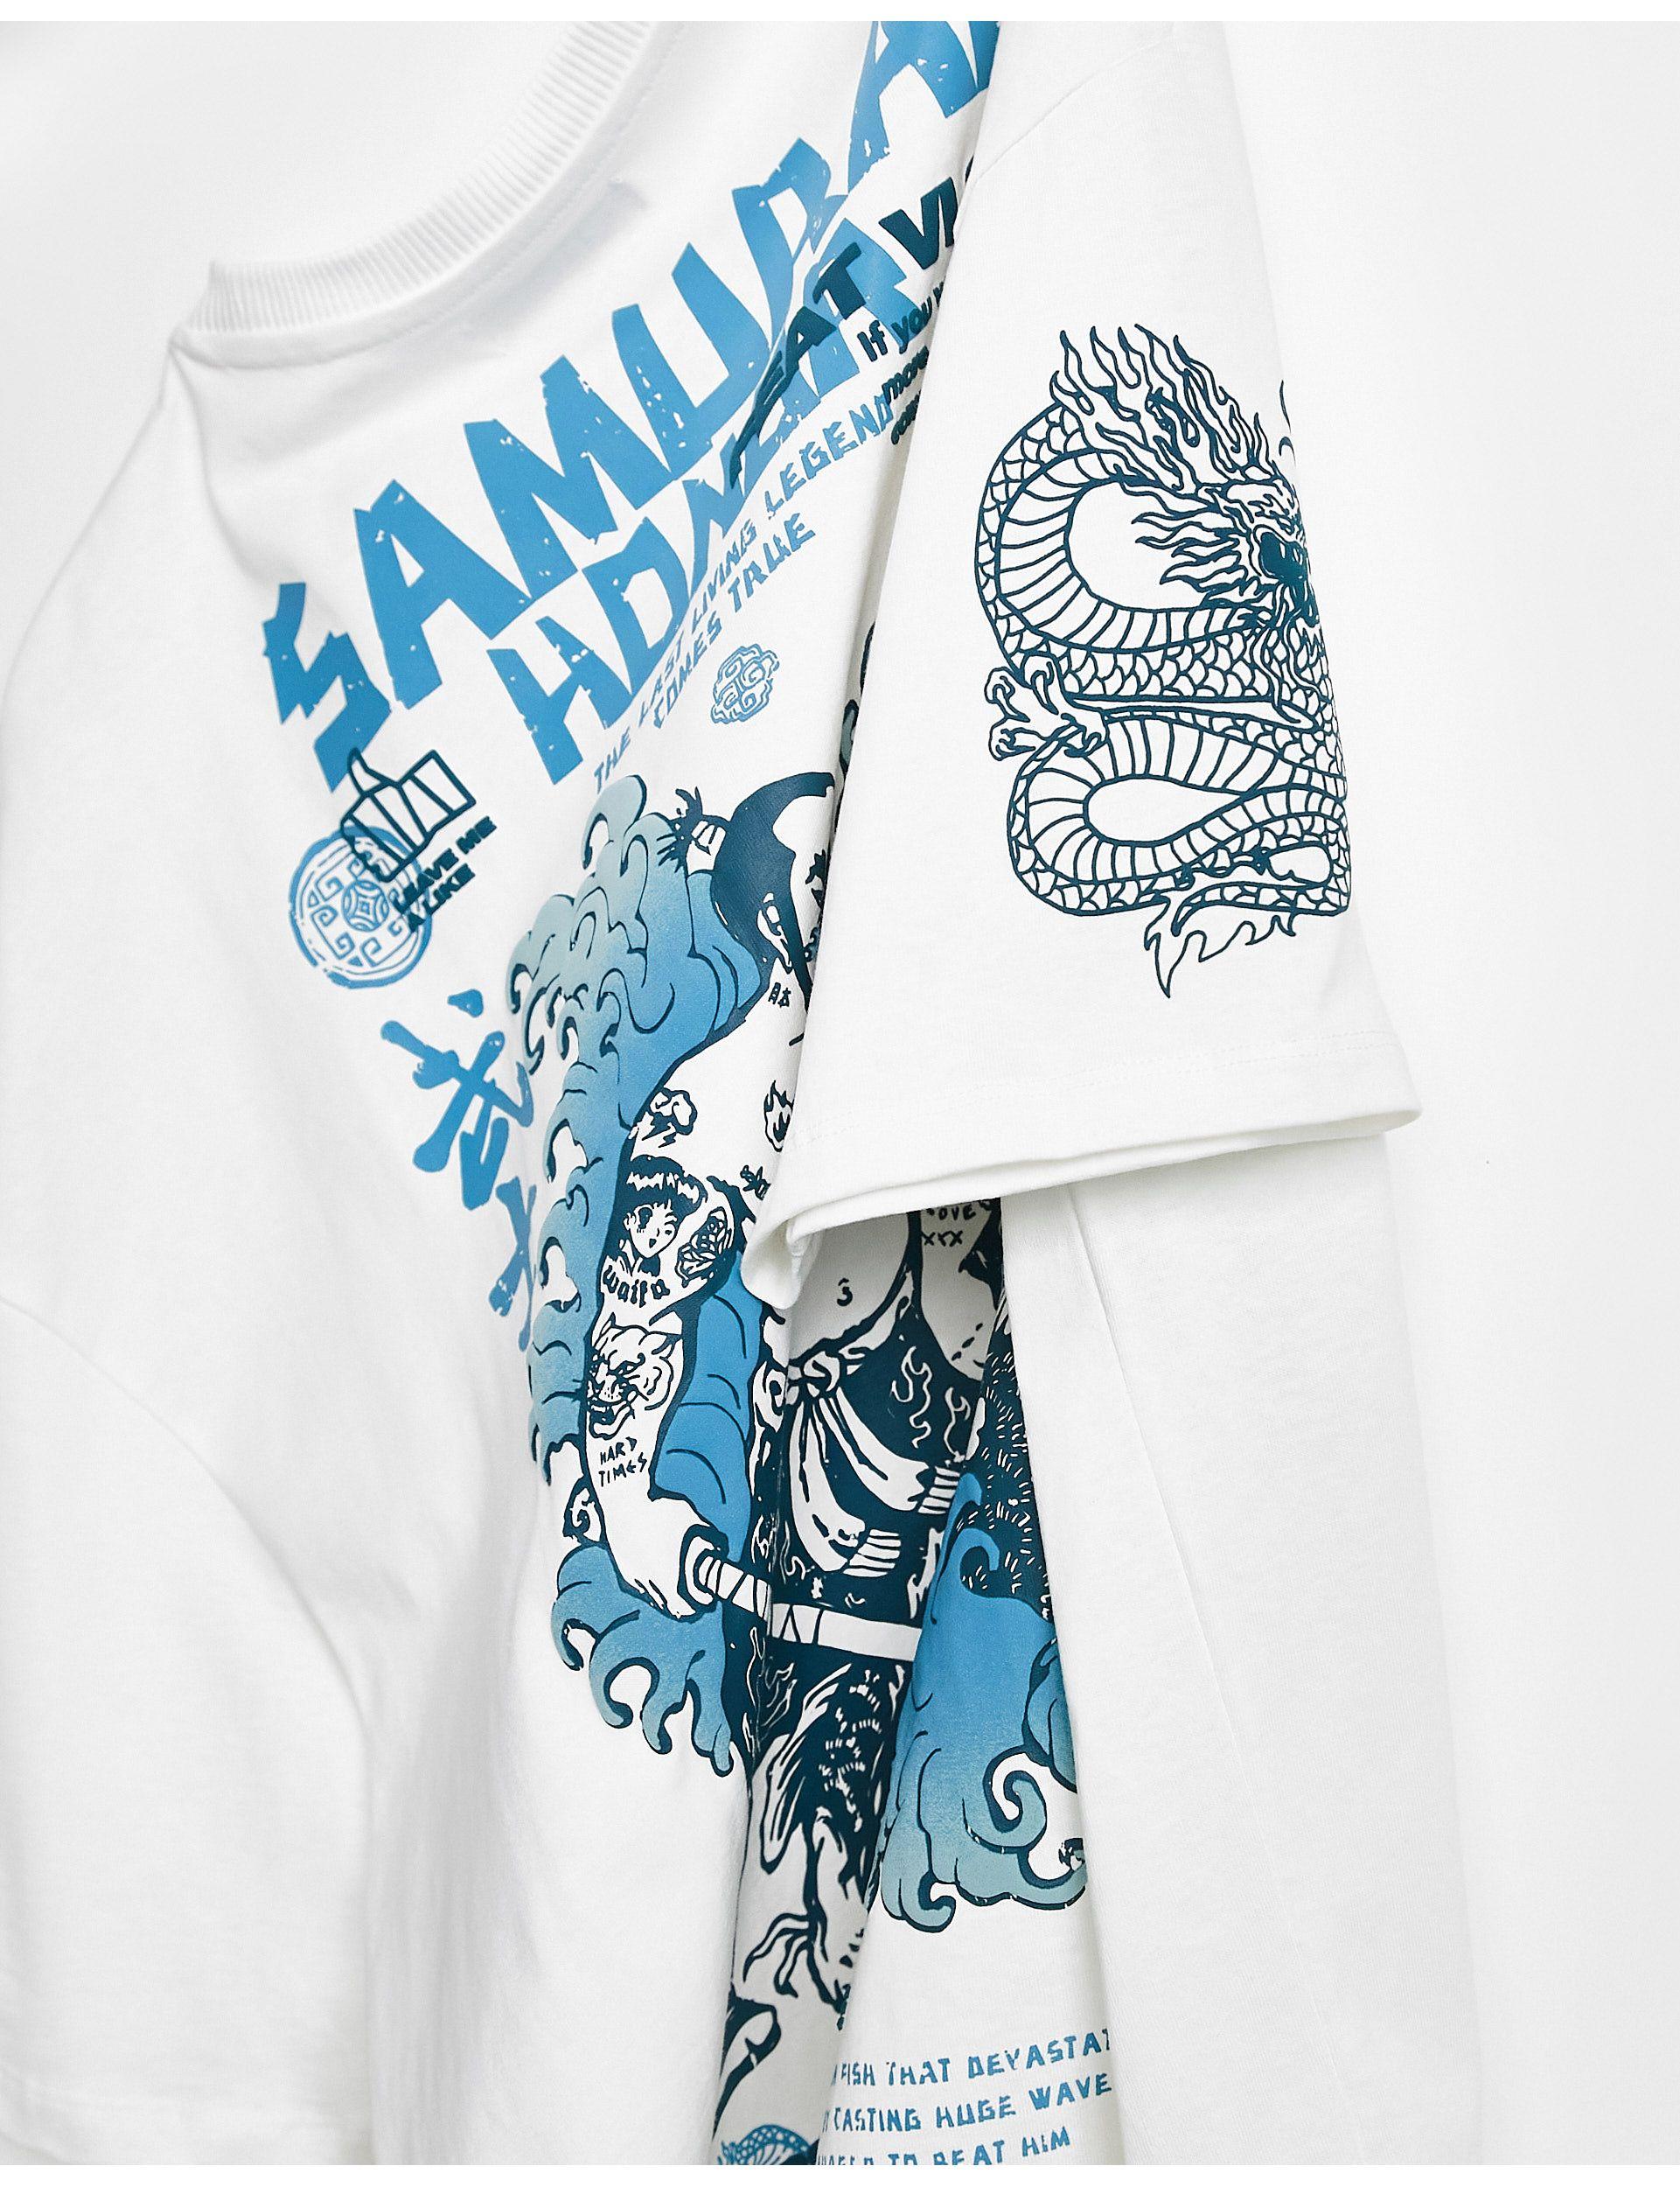 Bershka T-shirt With Samurai Back Print in White for Men | Lyst